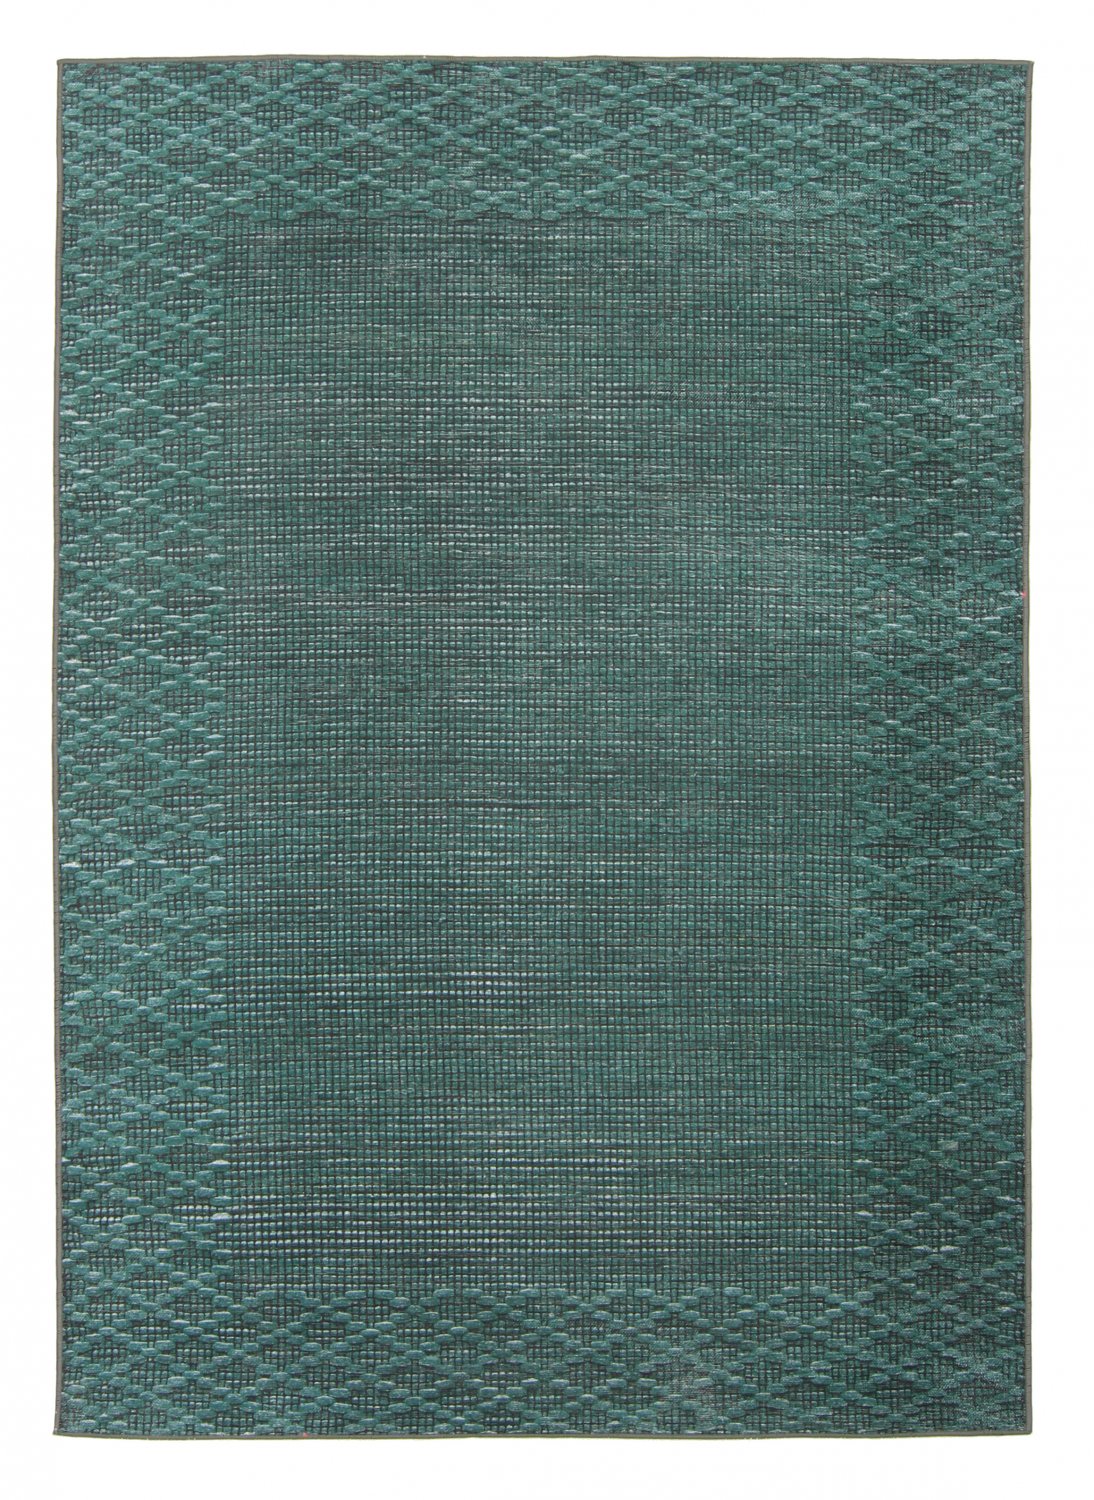 Wilton-teppe - Favone (blå/grønn)